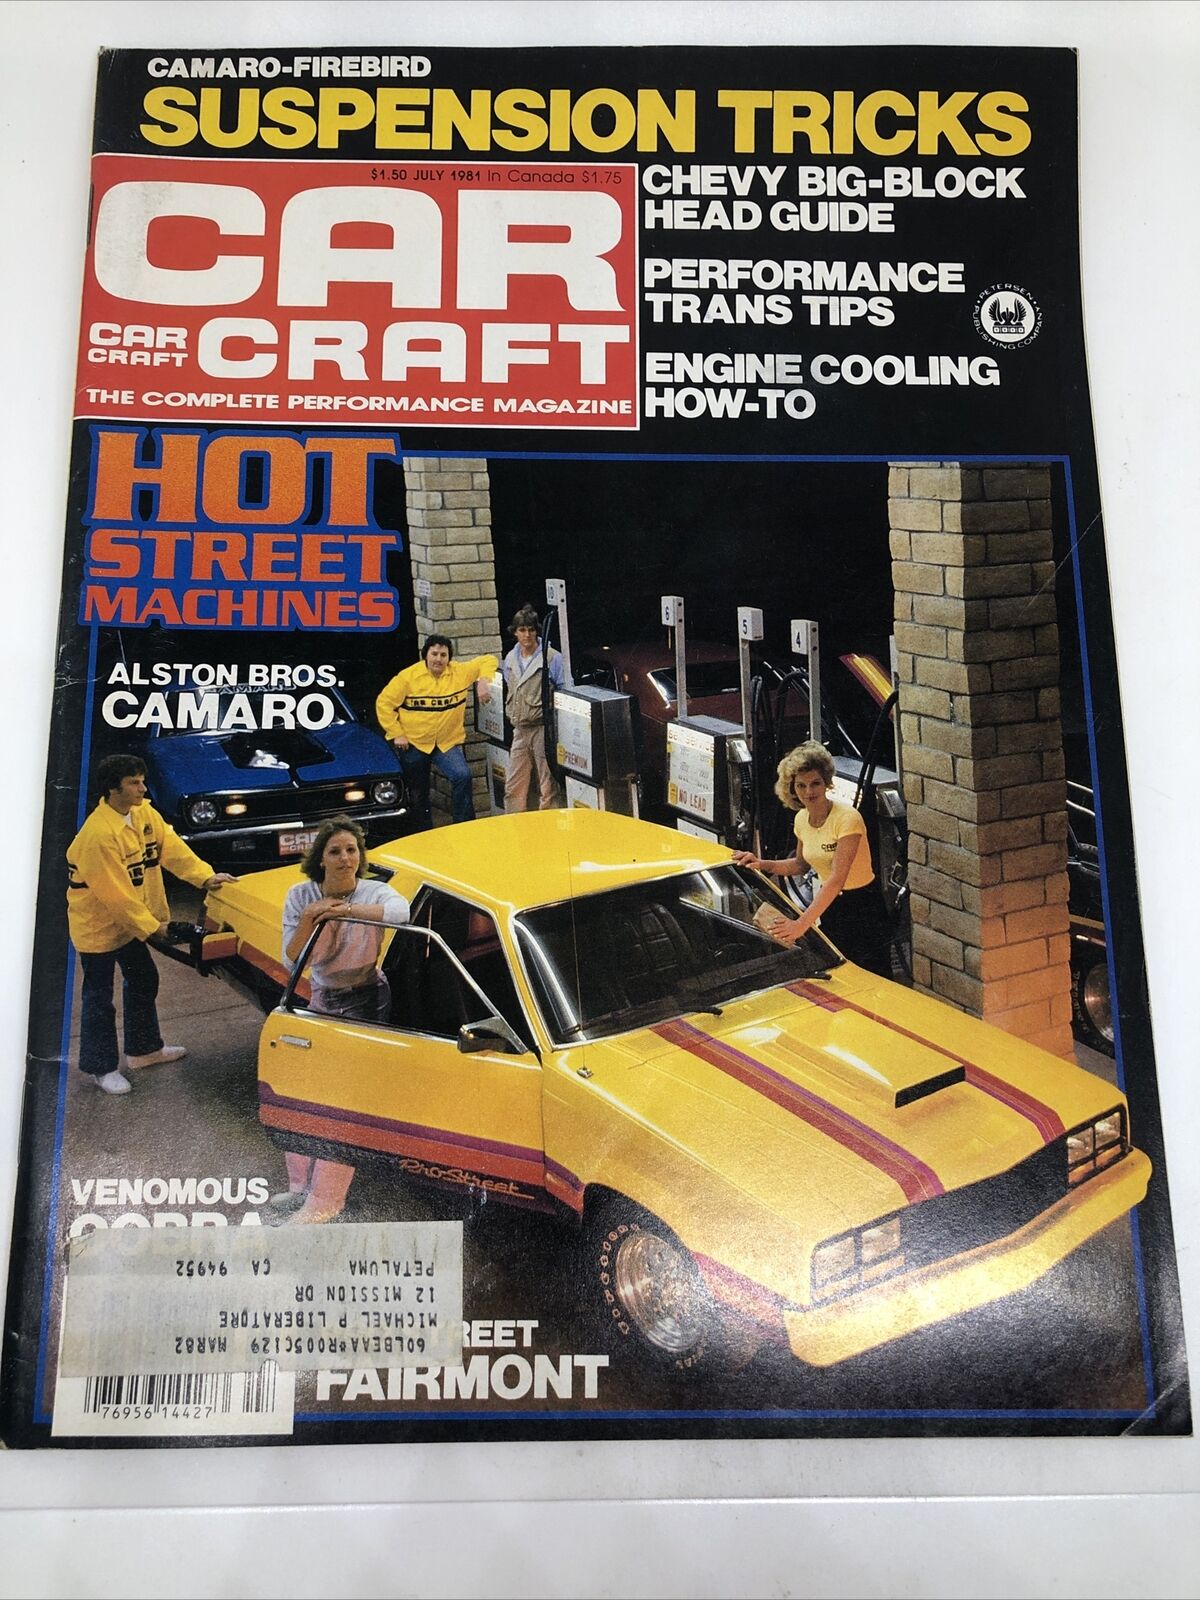 CAR CRAFT Magazine July 1981 - Camaro Firebird Suspension Tricks